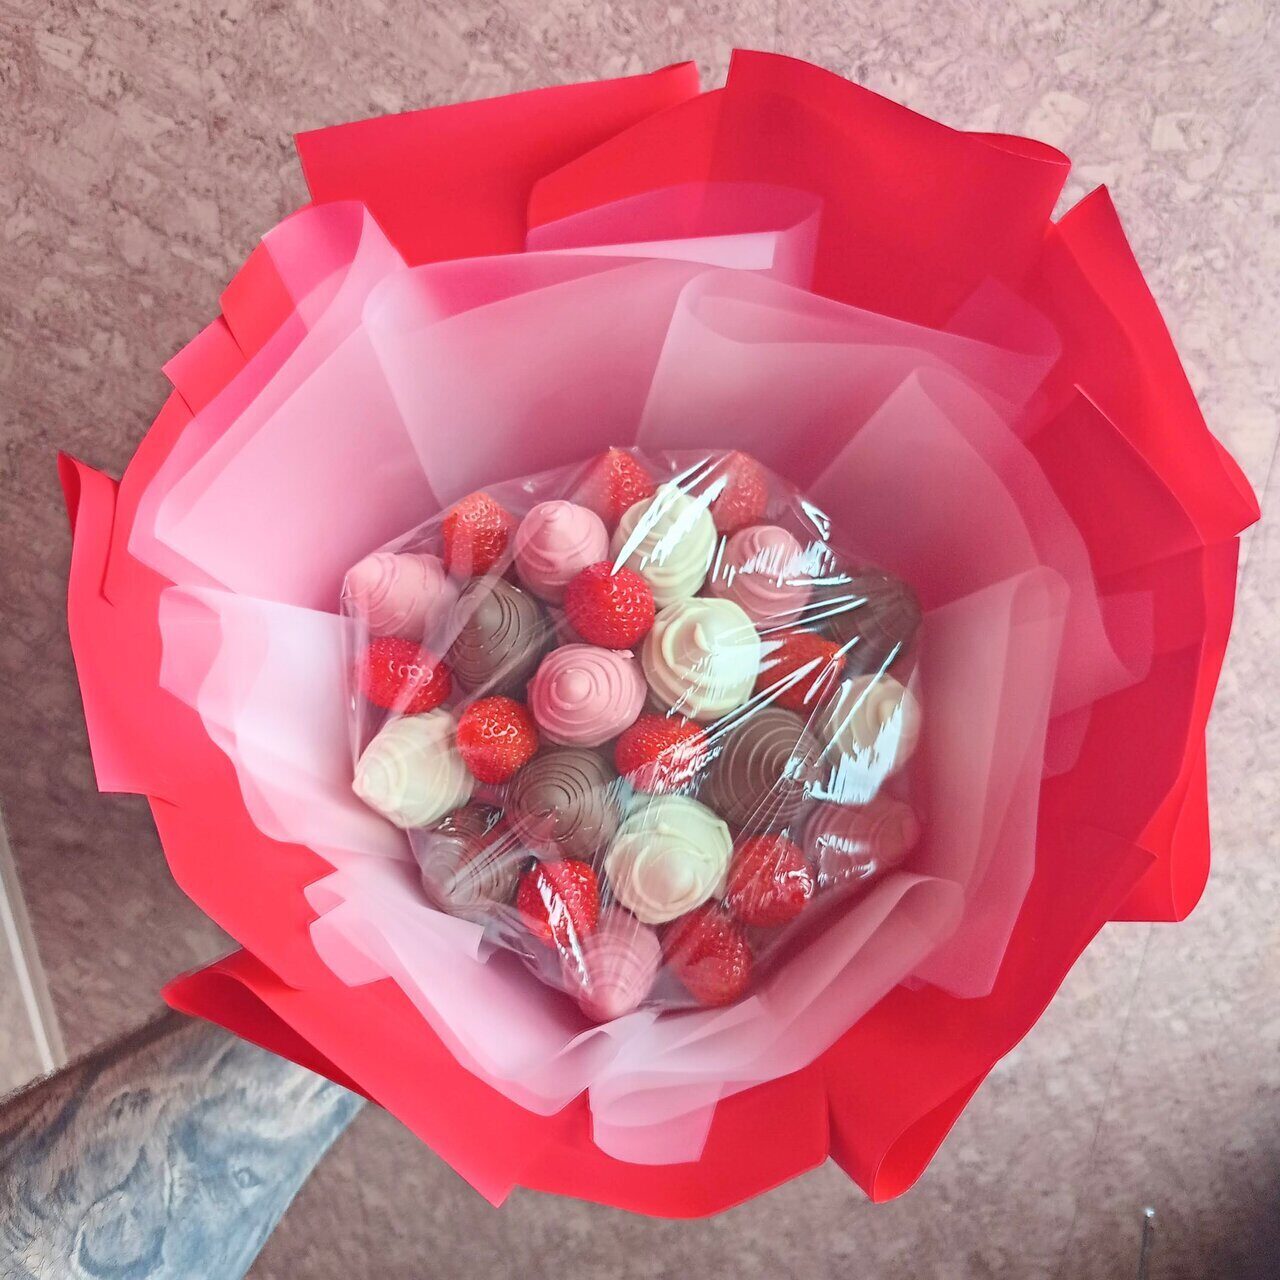 Как сделать букет из киндер сюрпризов и шоколадных конфет?